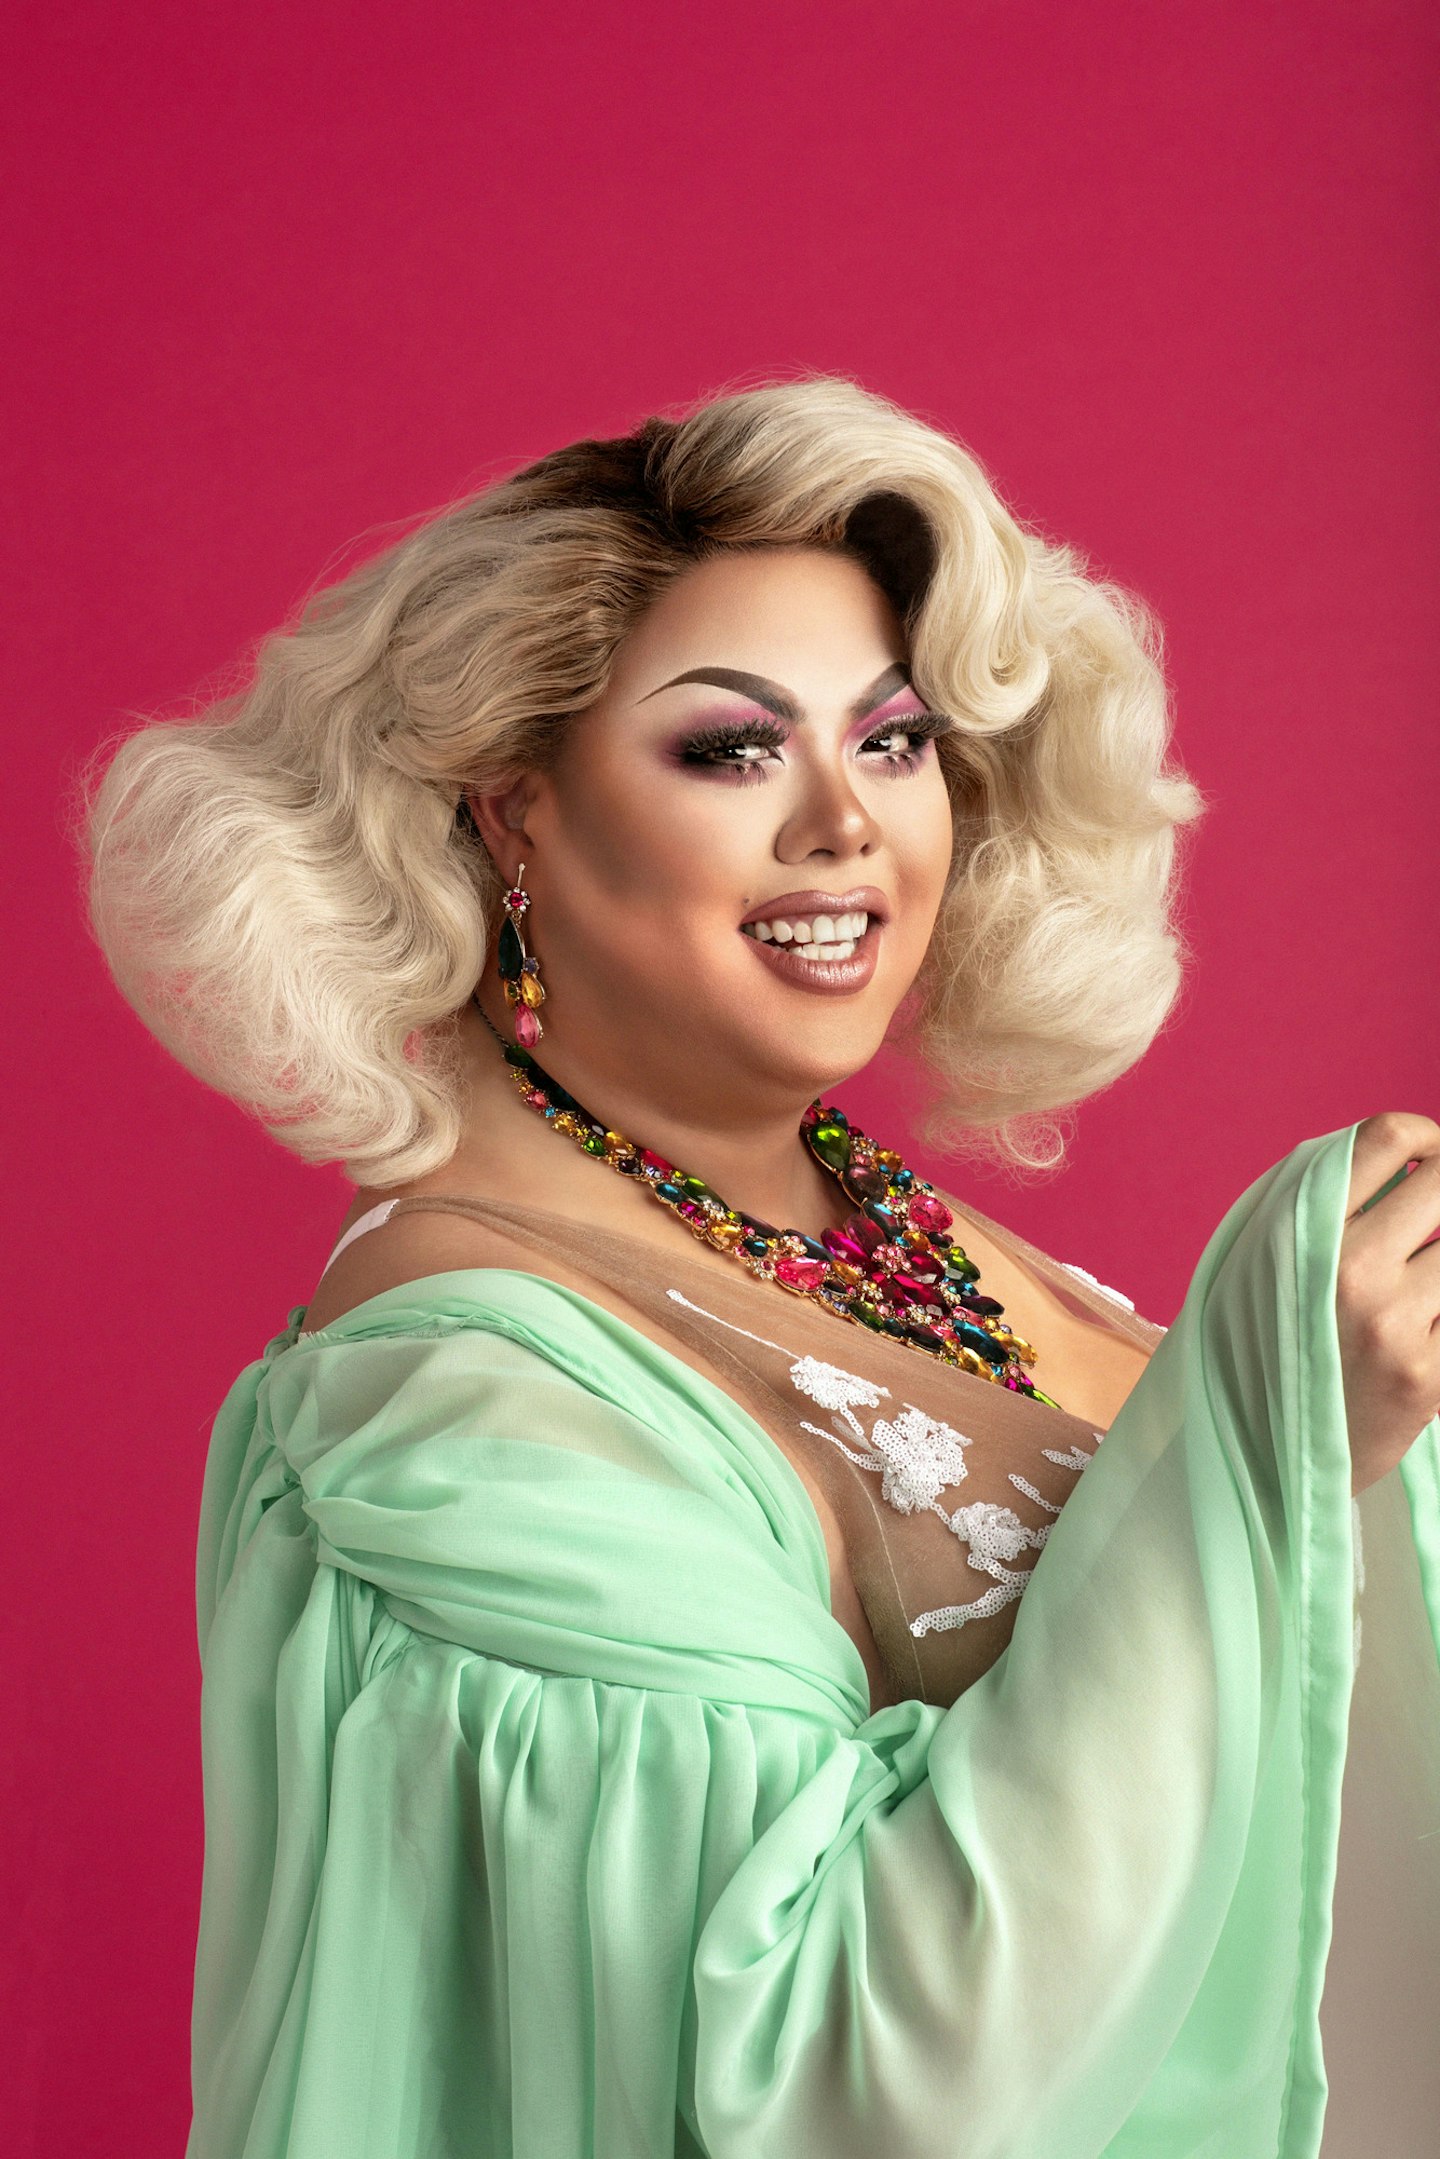 Who is Scaredy Kat? Meet the bisexual RuPaul's Drag Race UK queen